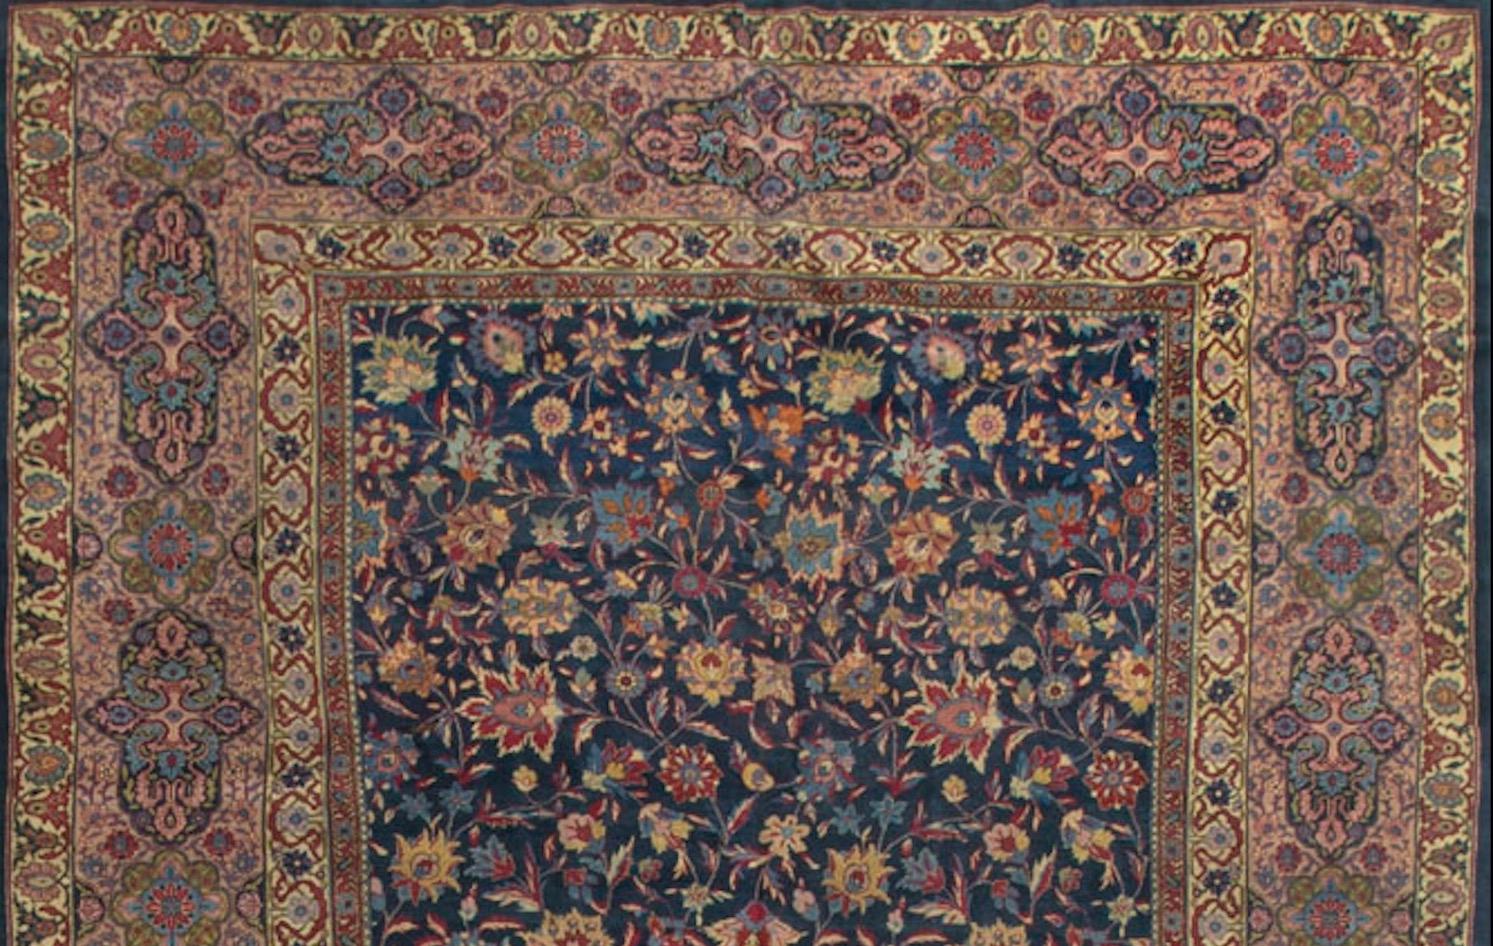 Ce tapis persan Kazvin antique, datant d'environ 1940, présente un design raffiné et détaillé typique de la région. Les tapis Kazvin présentent souvent des motifs floraux et géométriques complexes. Le champ central de ce tapis présente probablement